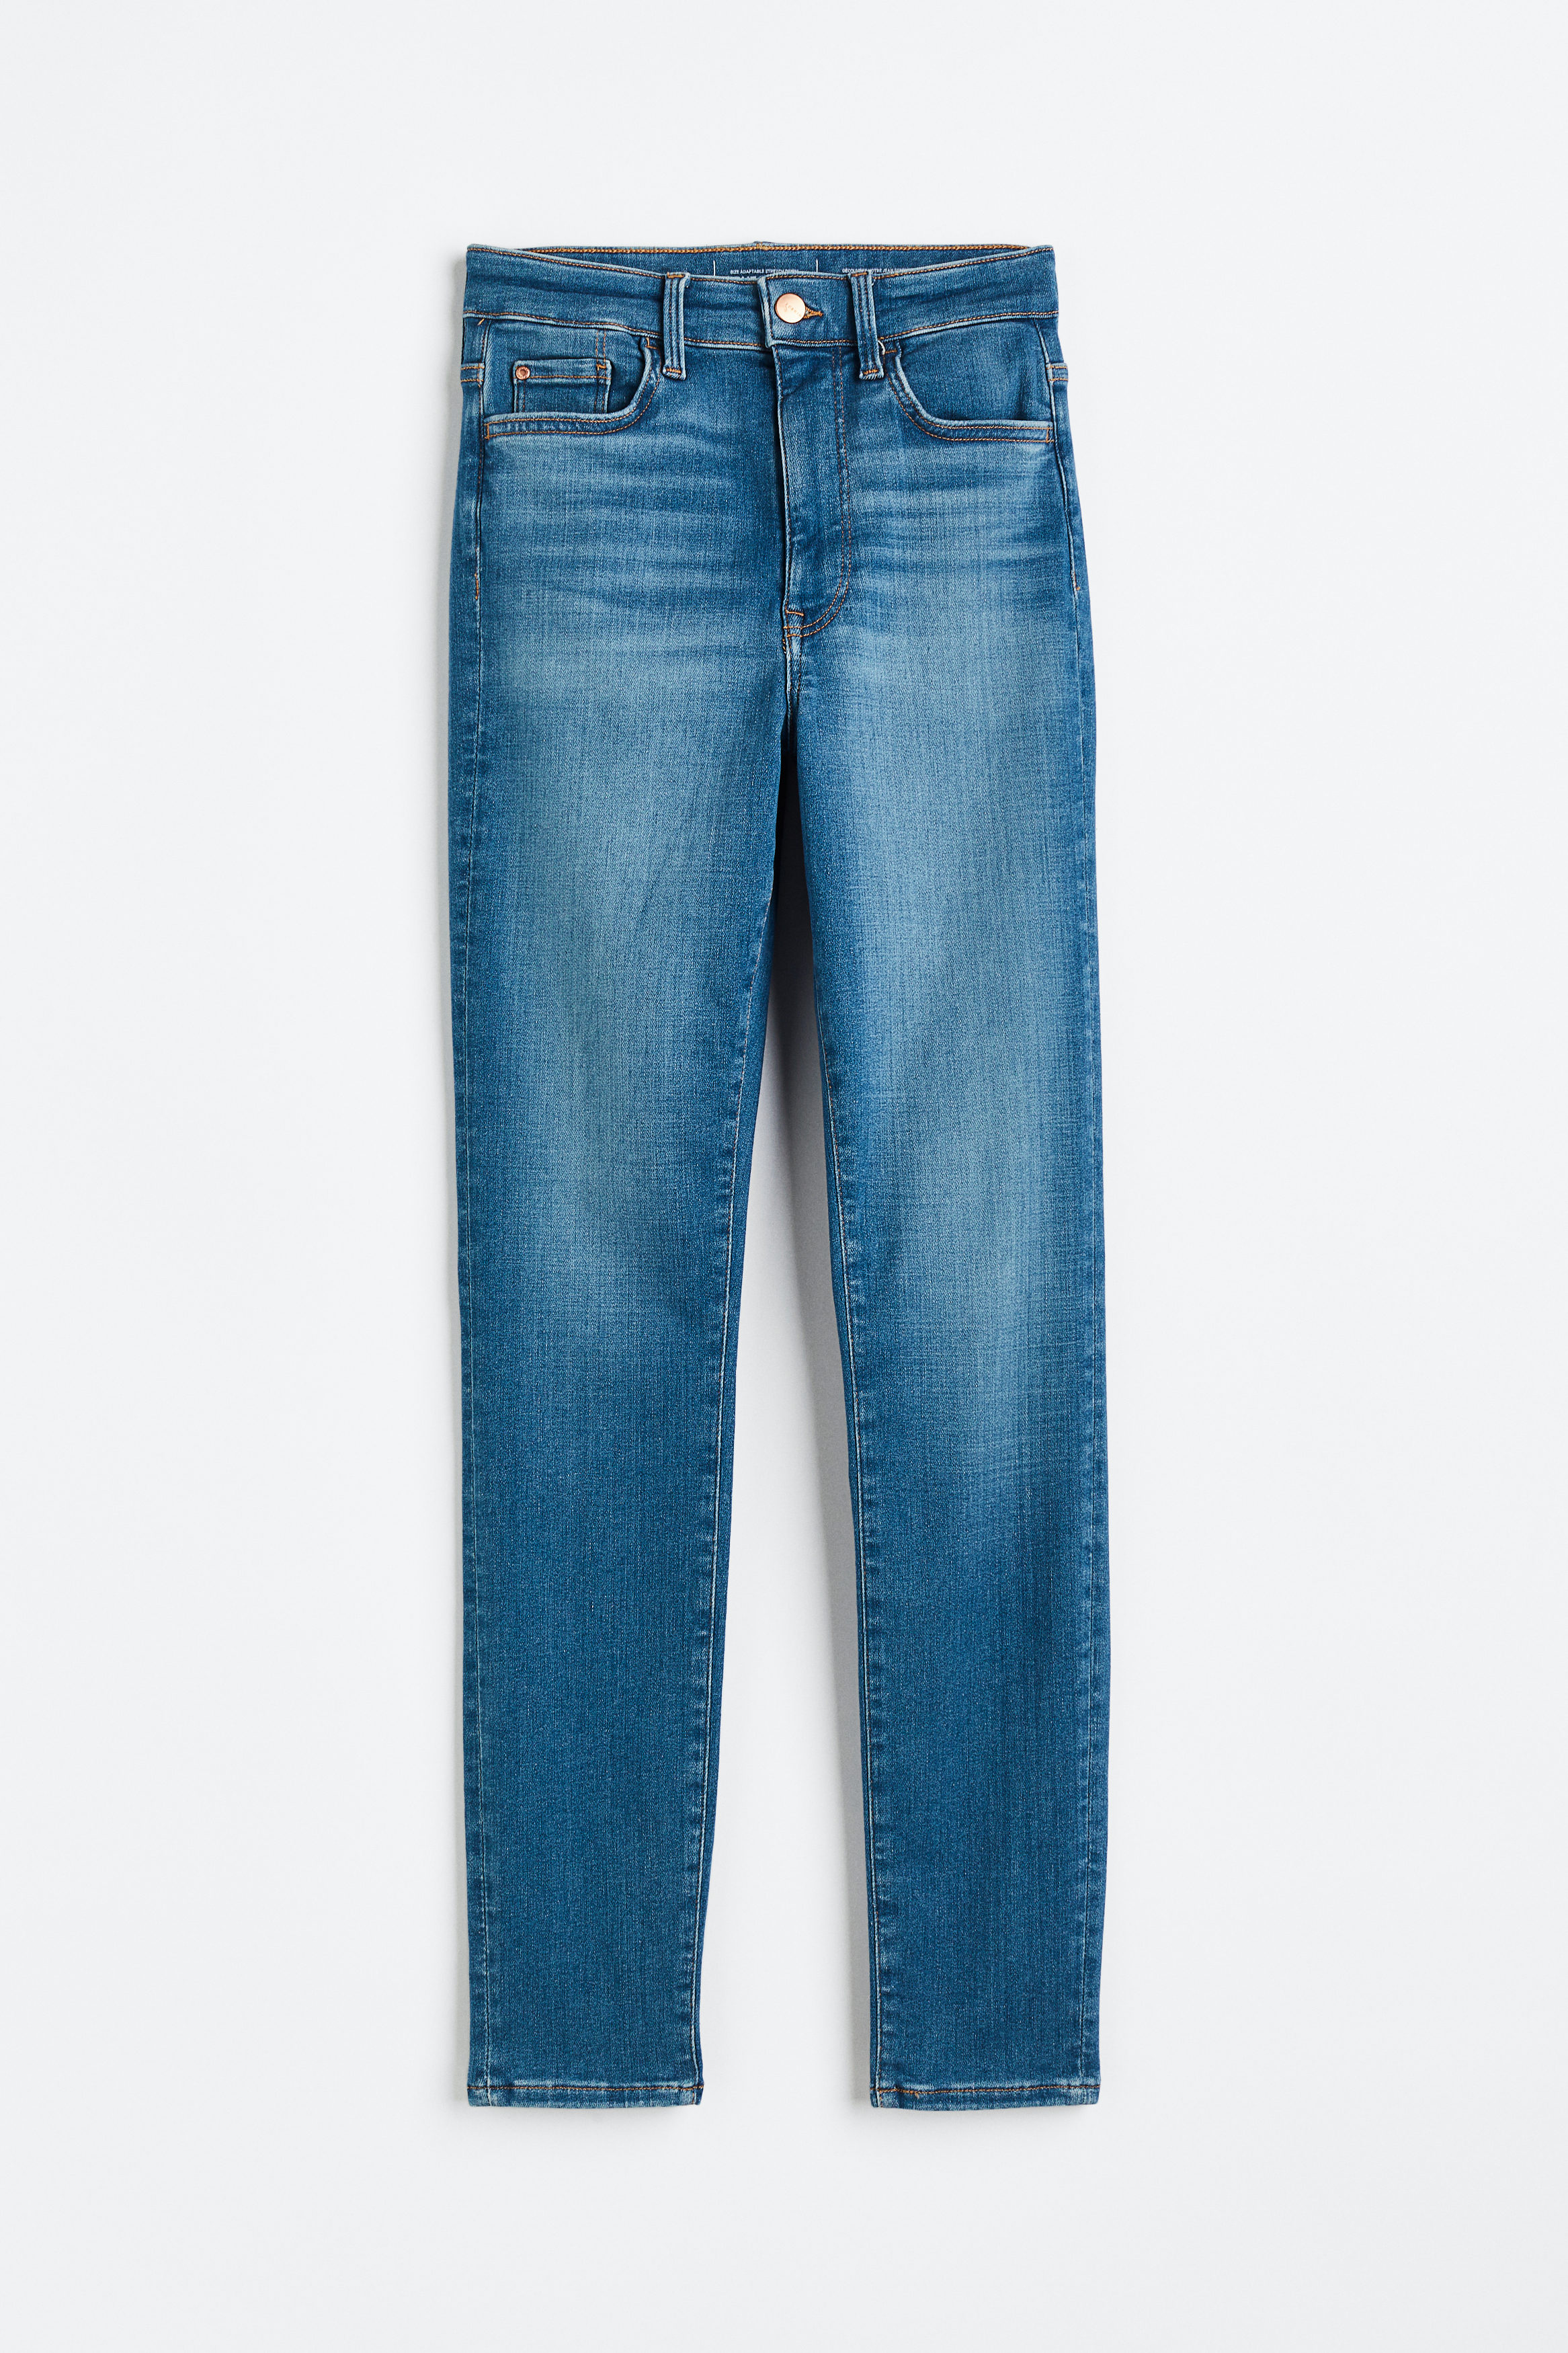 Billede af H&M True To You Skinny Ultra High Ankle Jeans Denimblå, jeans. Farve: Denim blue 034 I størrelse 4XL